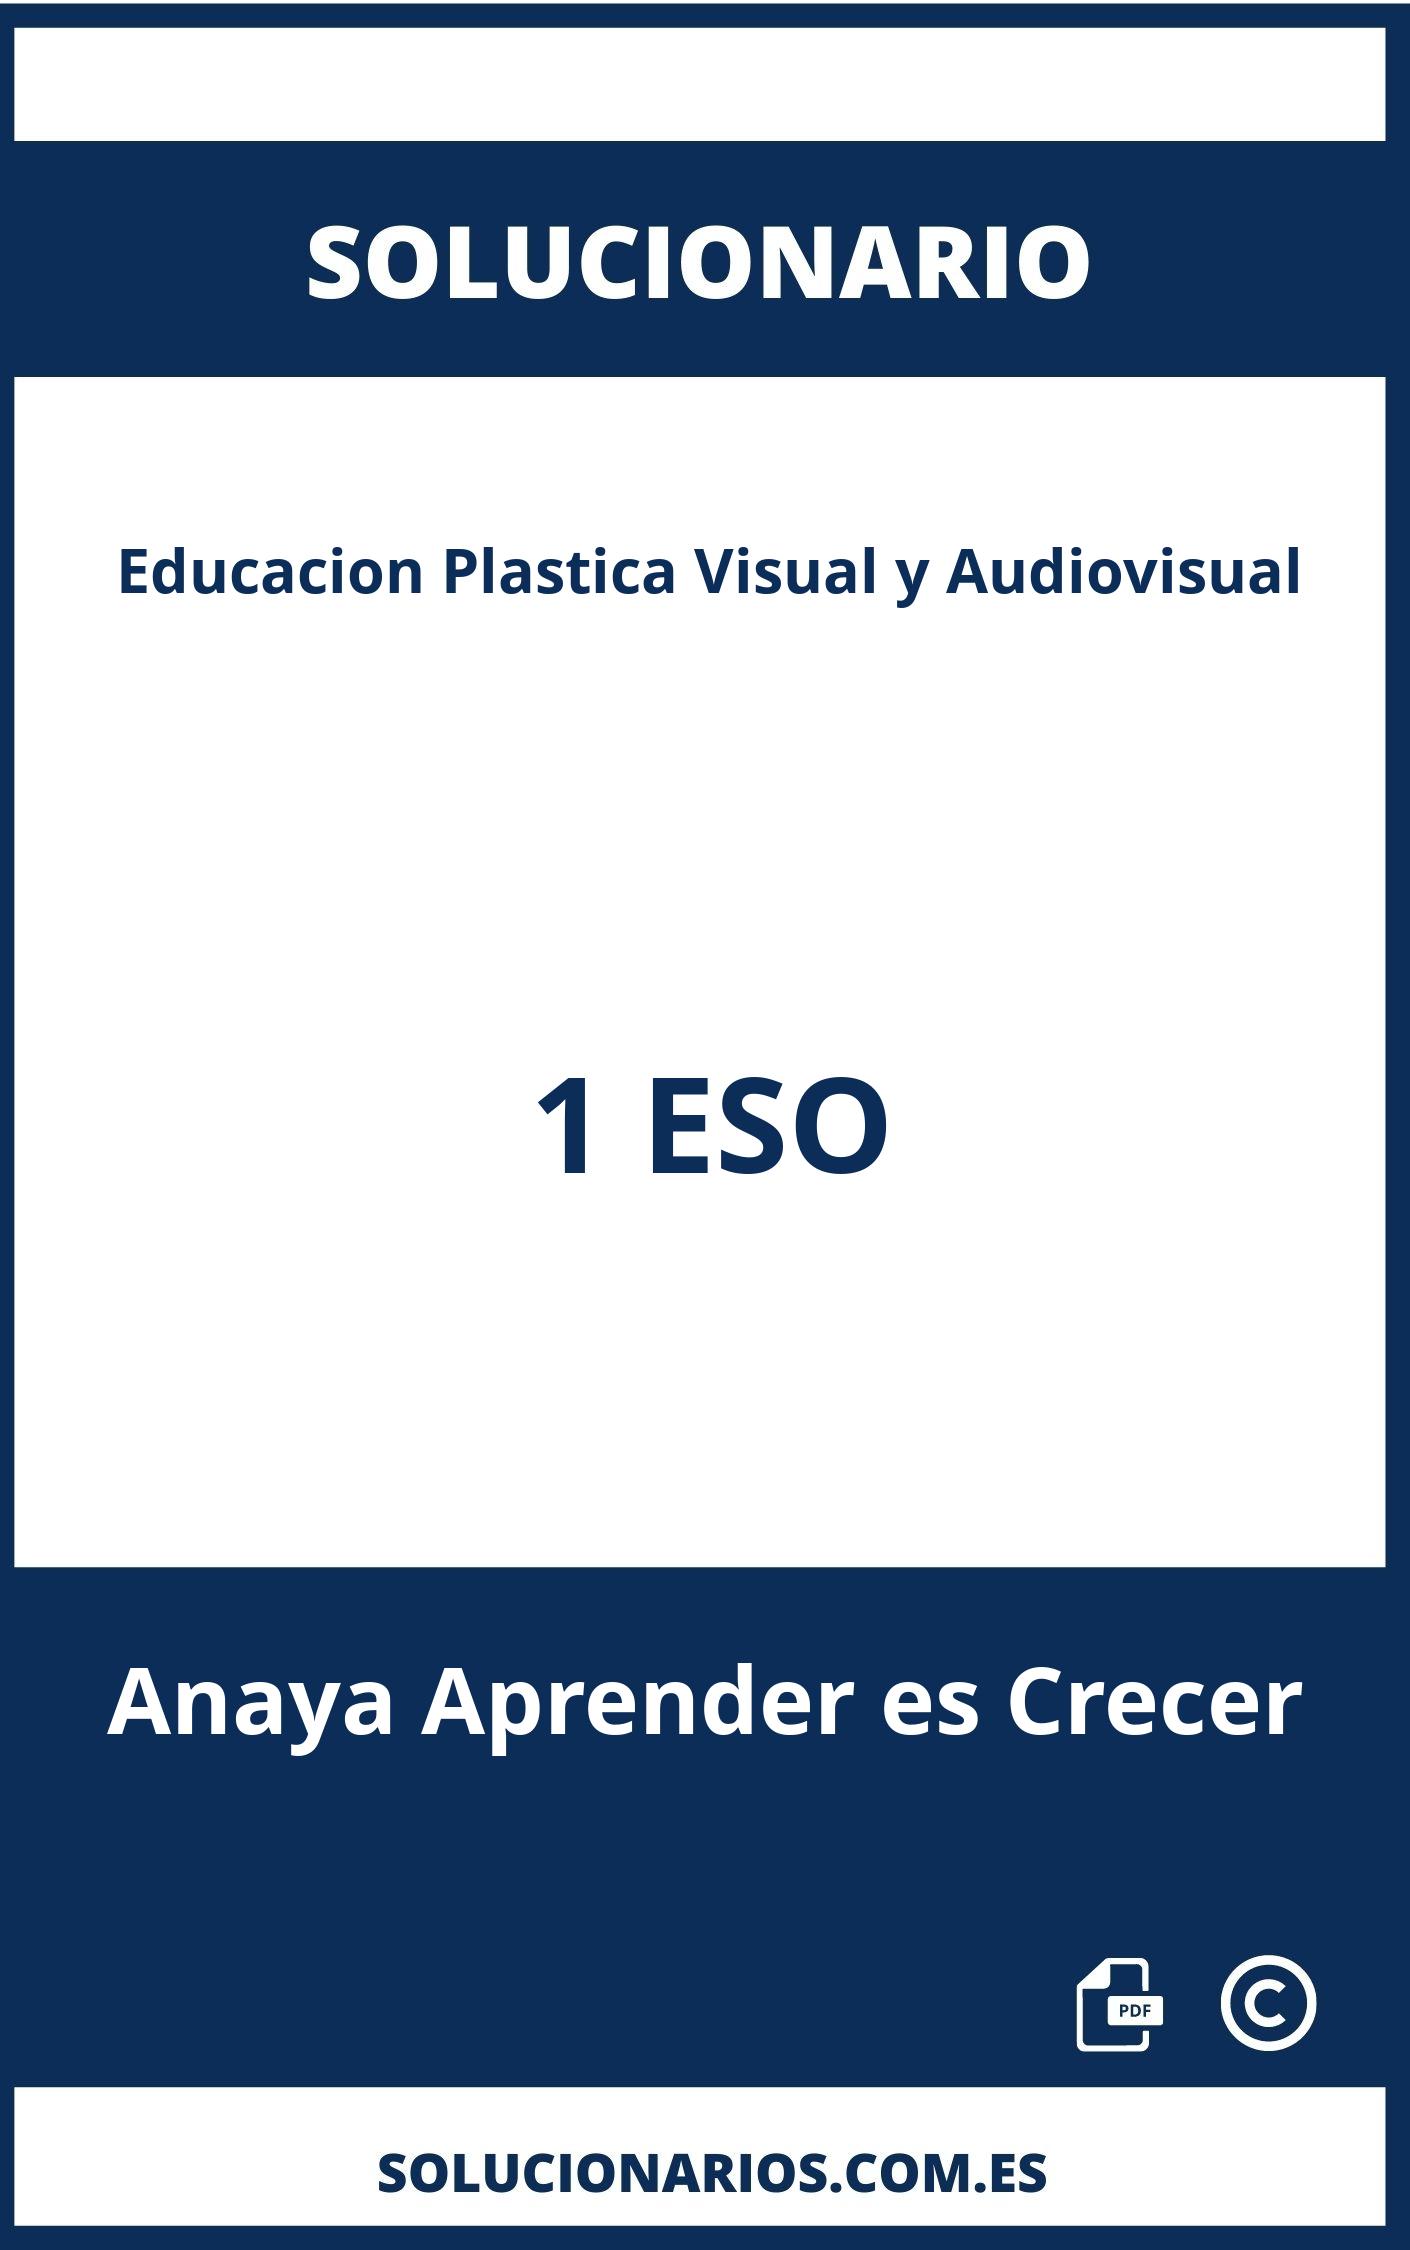 Solucionario Educacion Plastica Visual y Audiovisual 1 ESO Anaya Aprender es Crecer